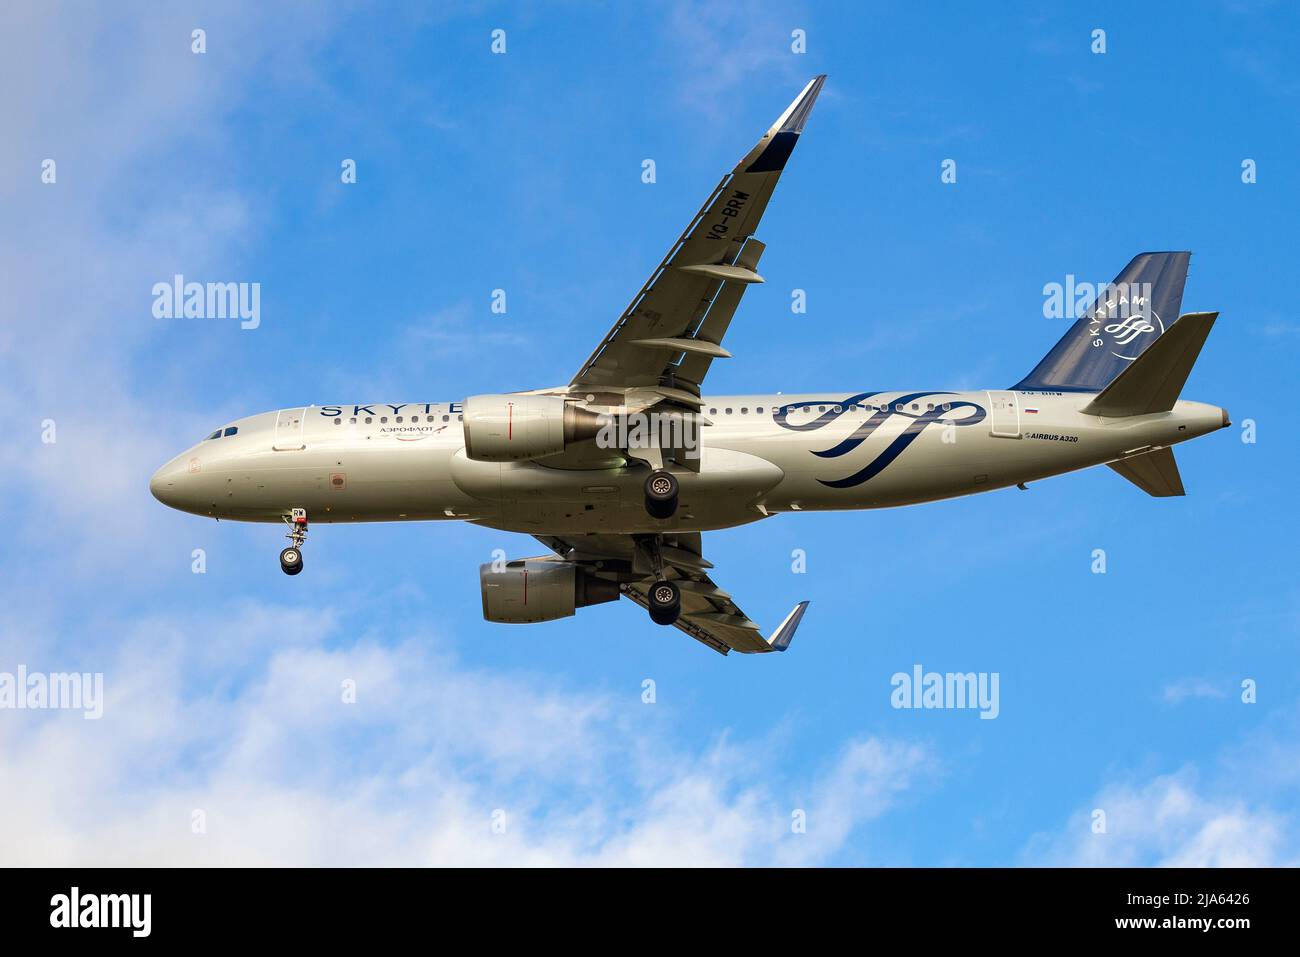 SANKT PETERSBURG, RUSSLAND - 28. OKTOBER 2020: Aircraf Airbus A321-214 (VQ-BRW) der Aeroflot-Fluggesellschaften auf Gleitbahn. Ansicht von unten Stockfoto